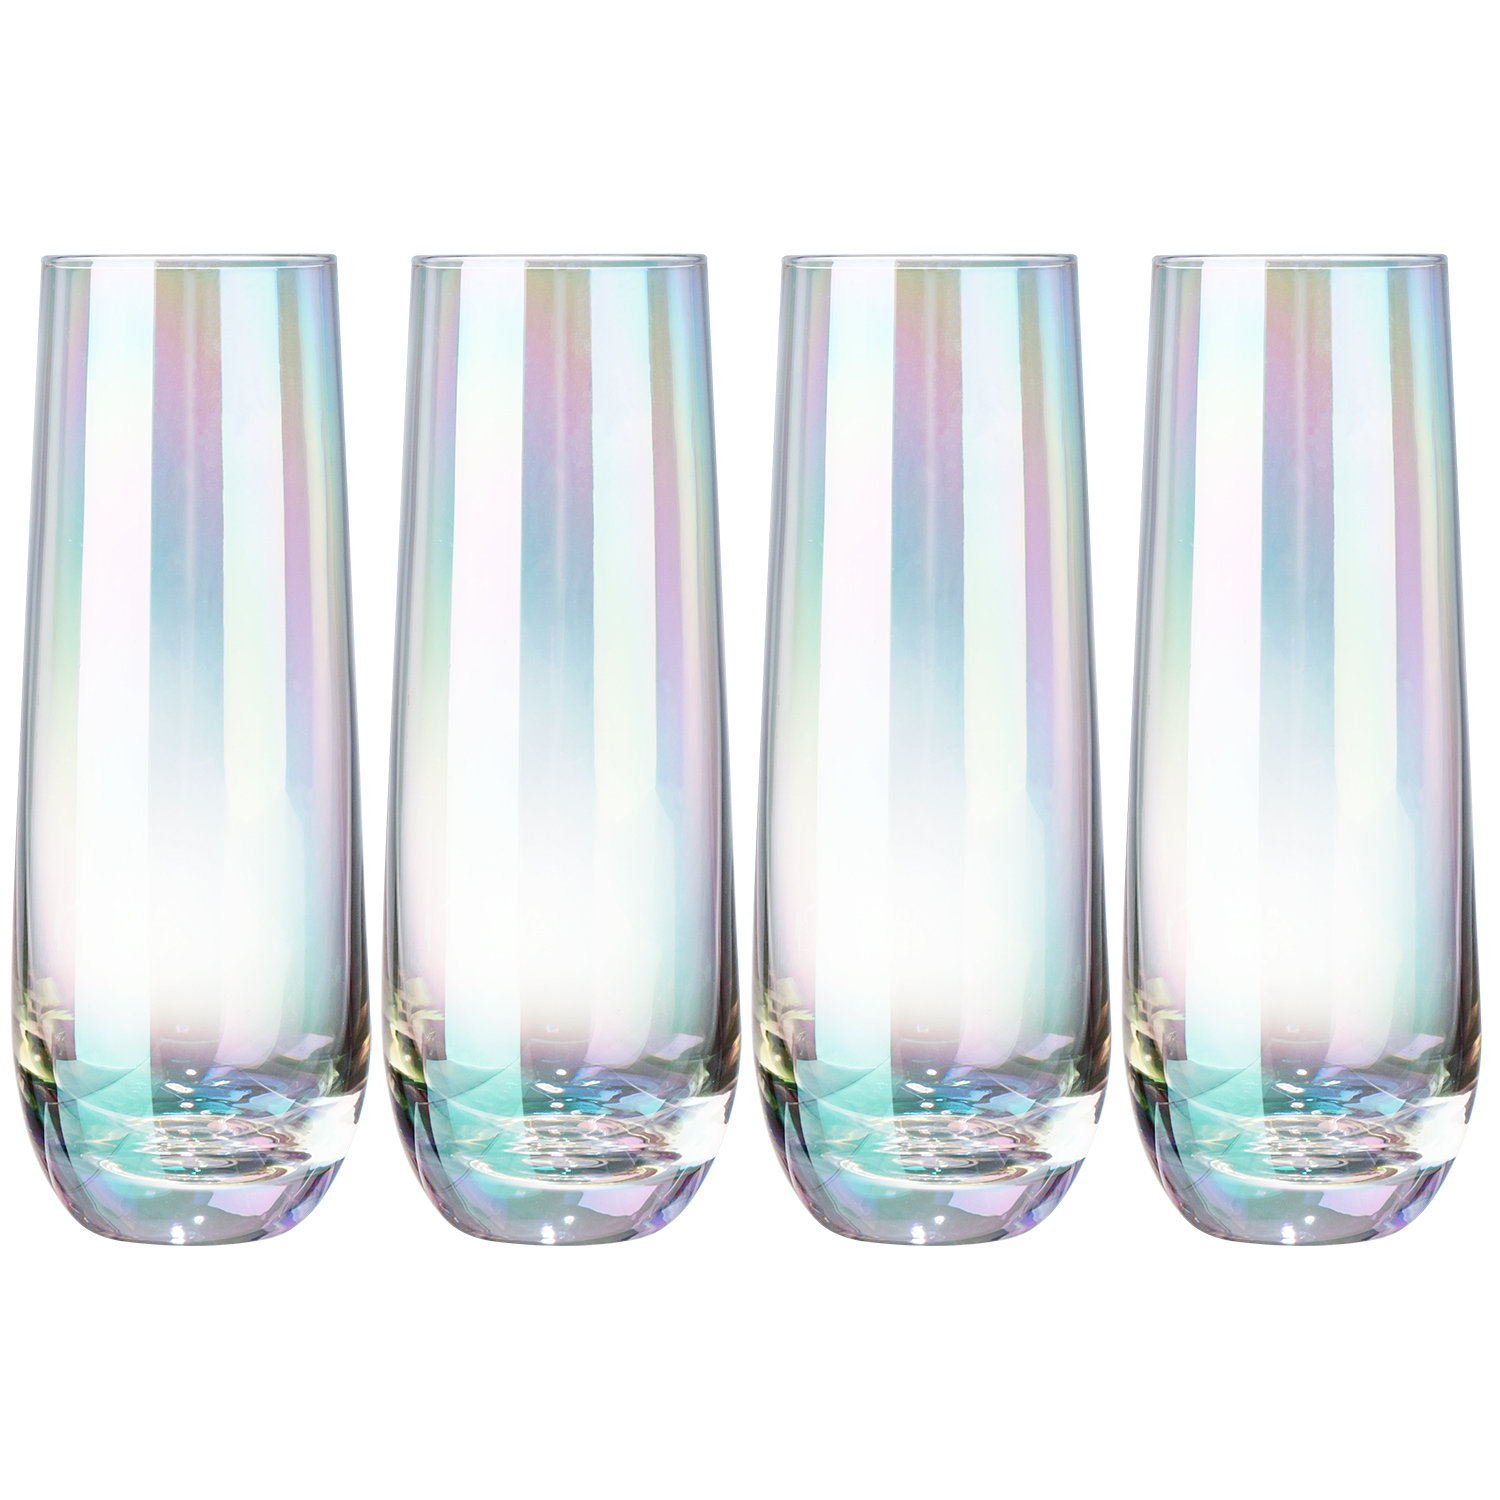 JoyJolt Milo Stemless Champagne Flutes Crystal Glasses - Set of 8 Glasses -  9.4oz